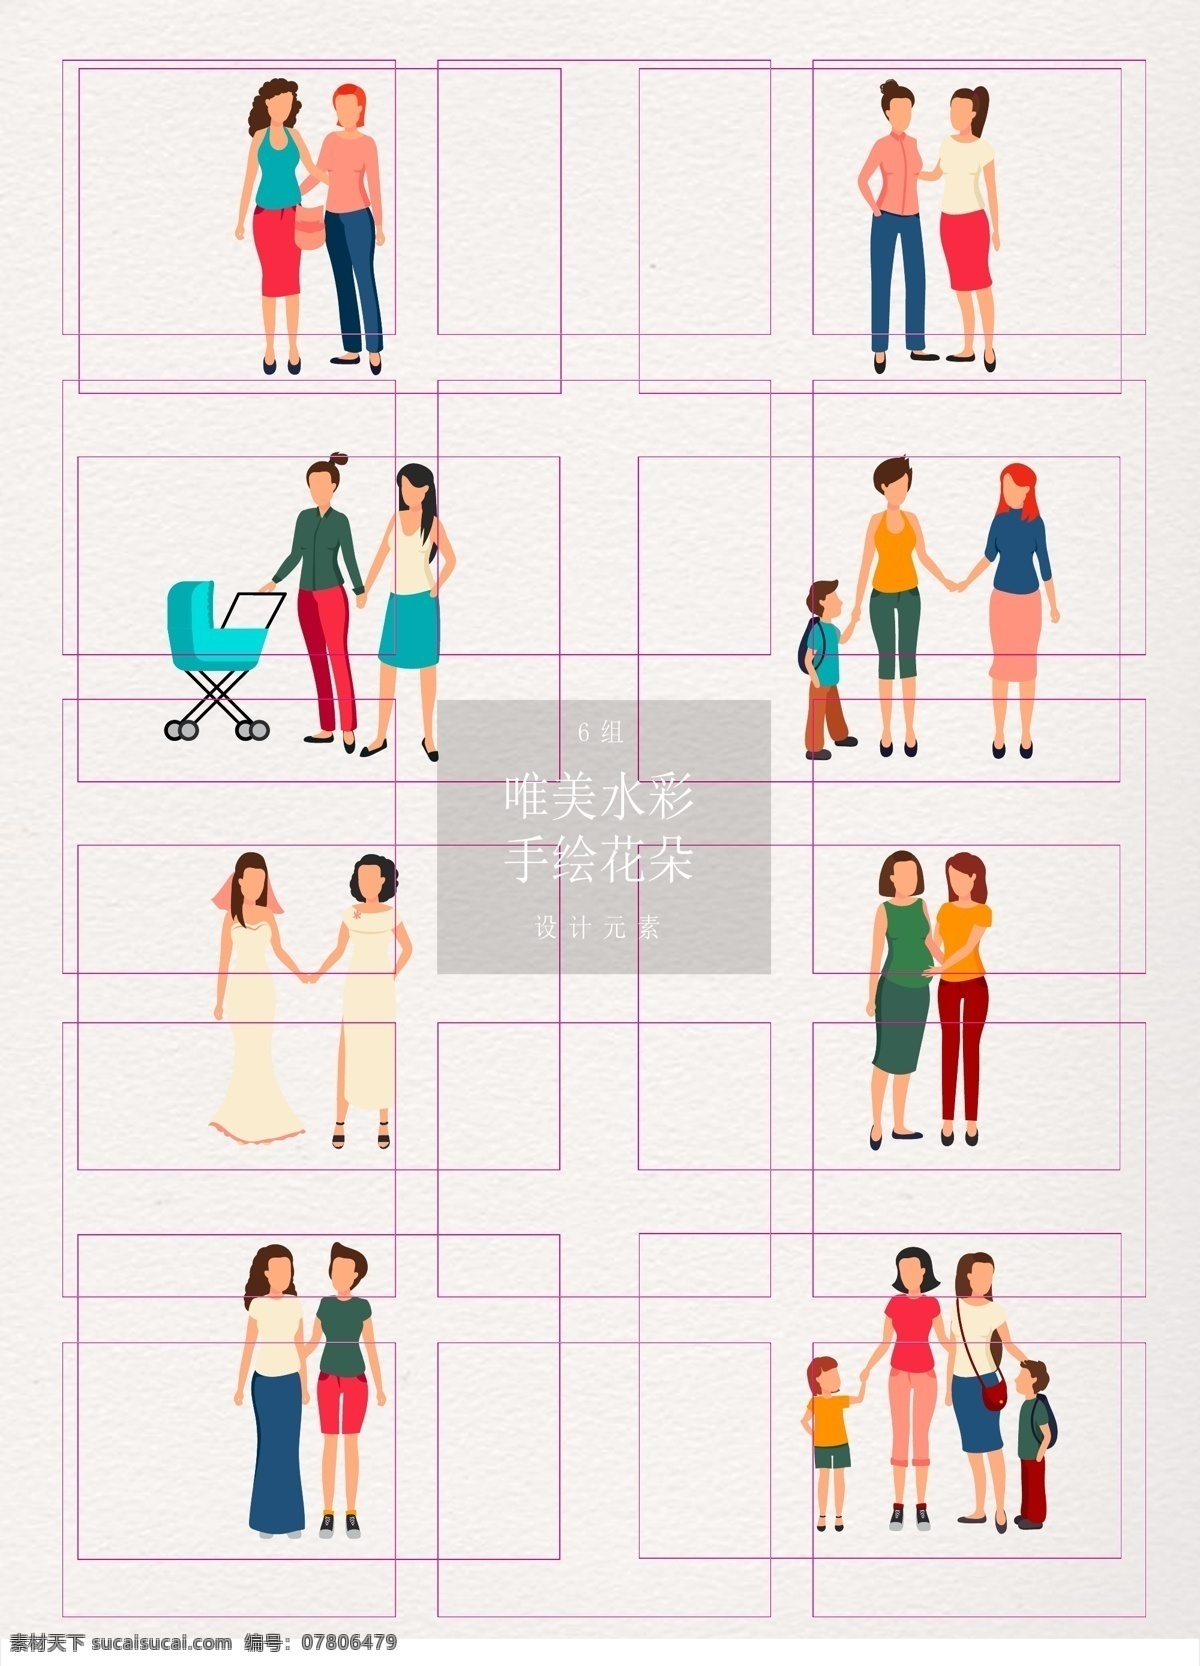 手绘 组 女性 同性恋 人物 卡通 矢量图 结婚 情侣 人物设计 带娃